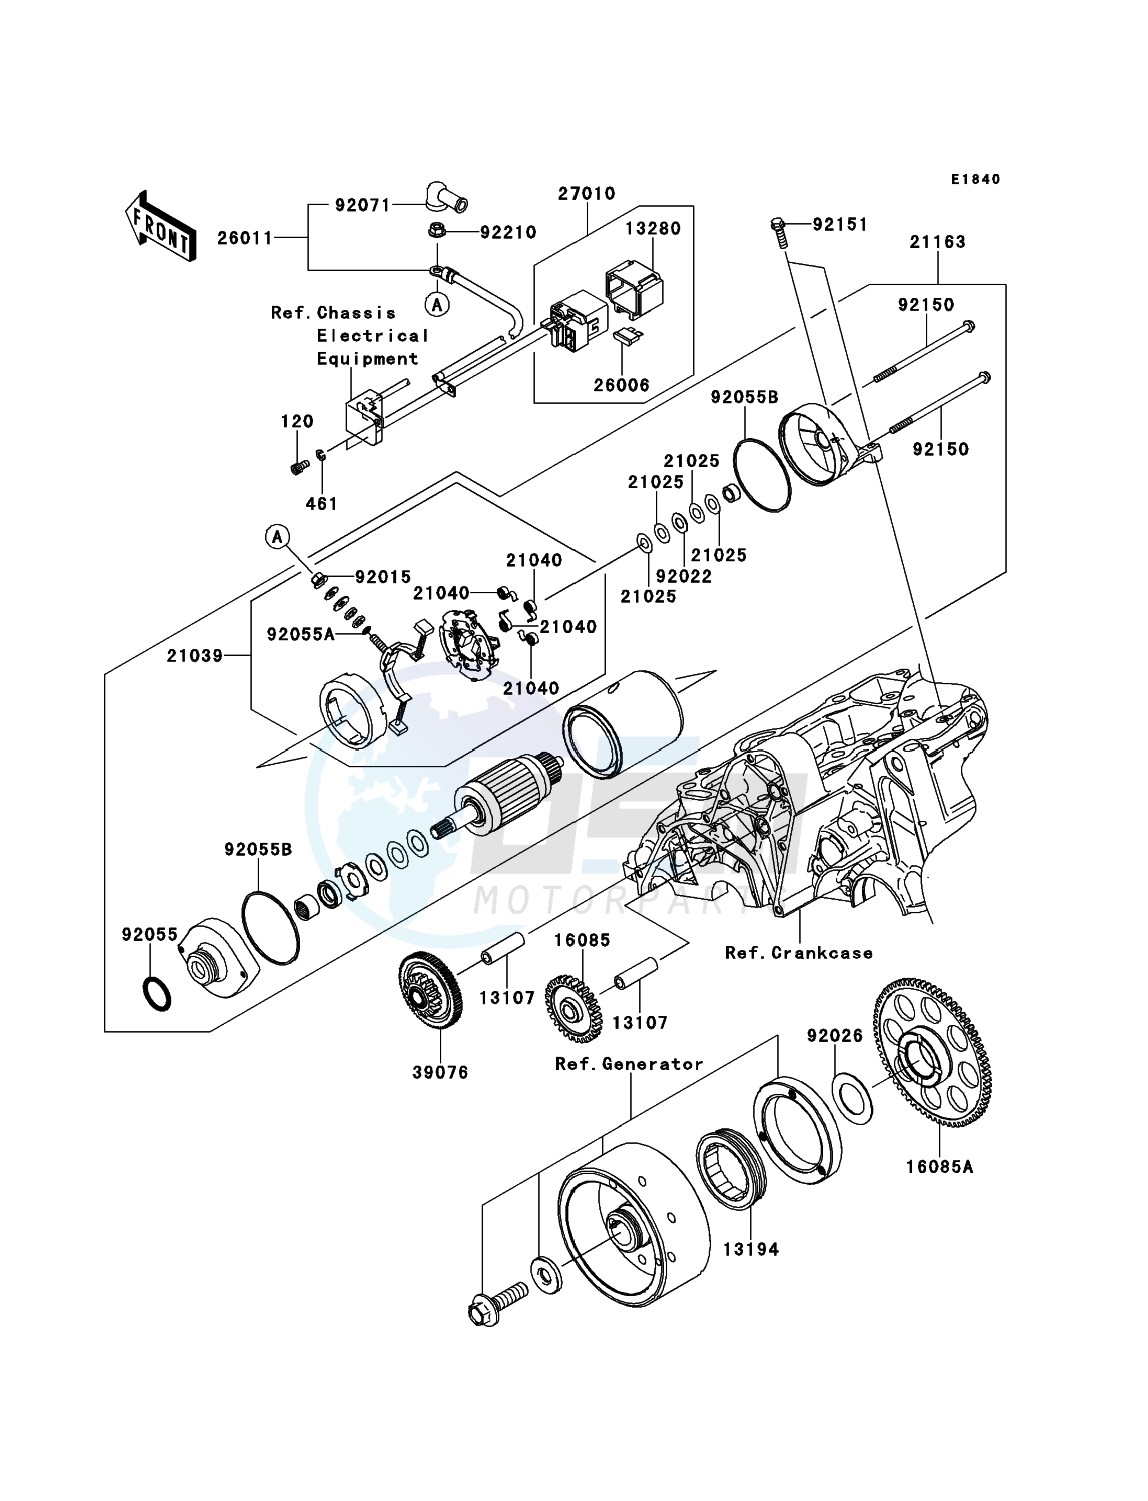 Starter Motor(-ER650AE046804) blueprint